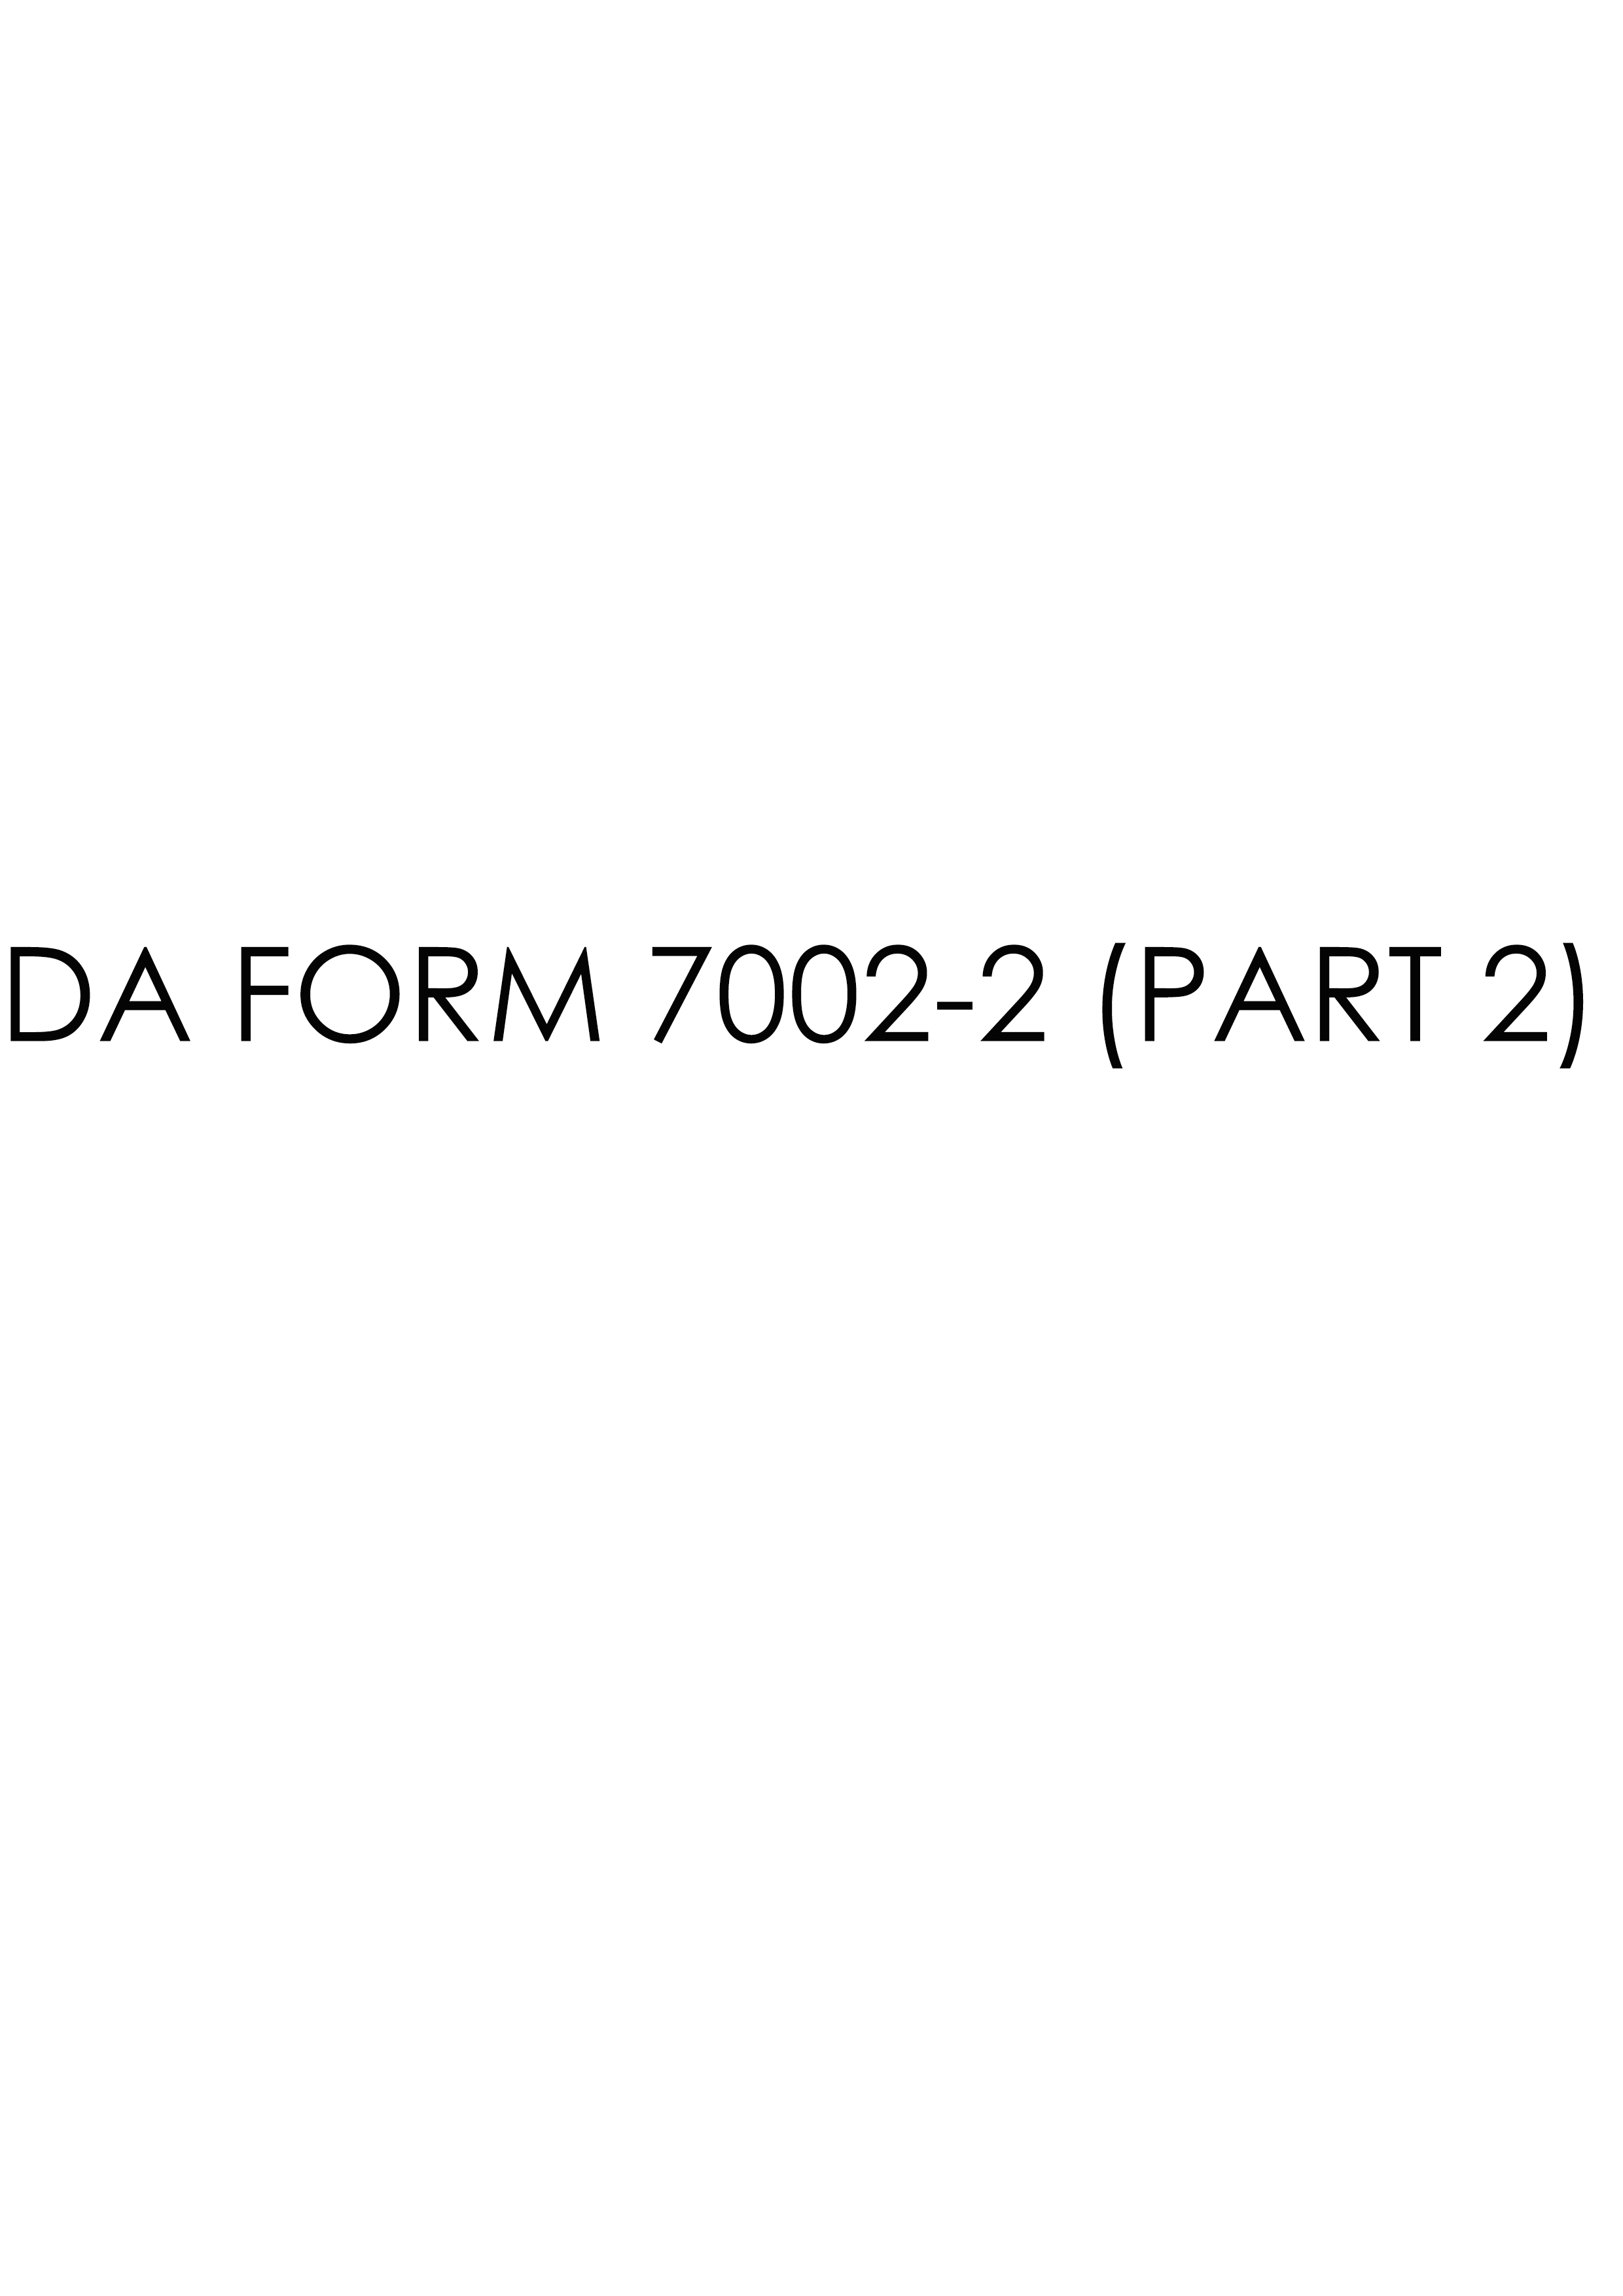 da Form 7002-2 (PART 2) fillable